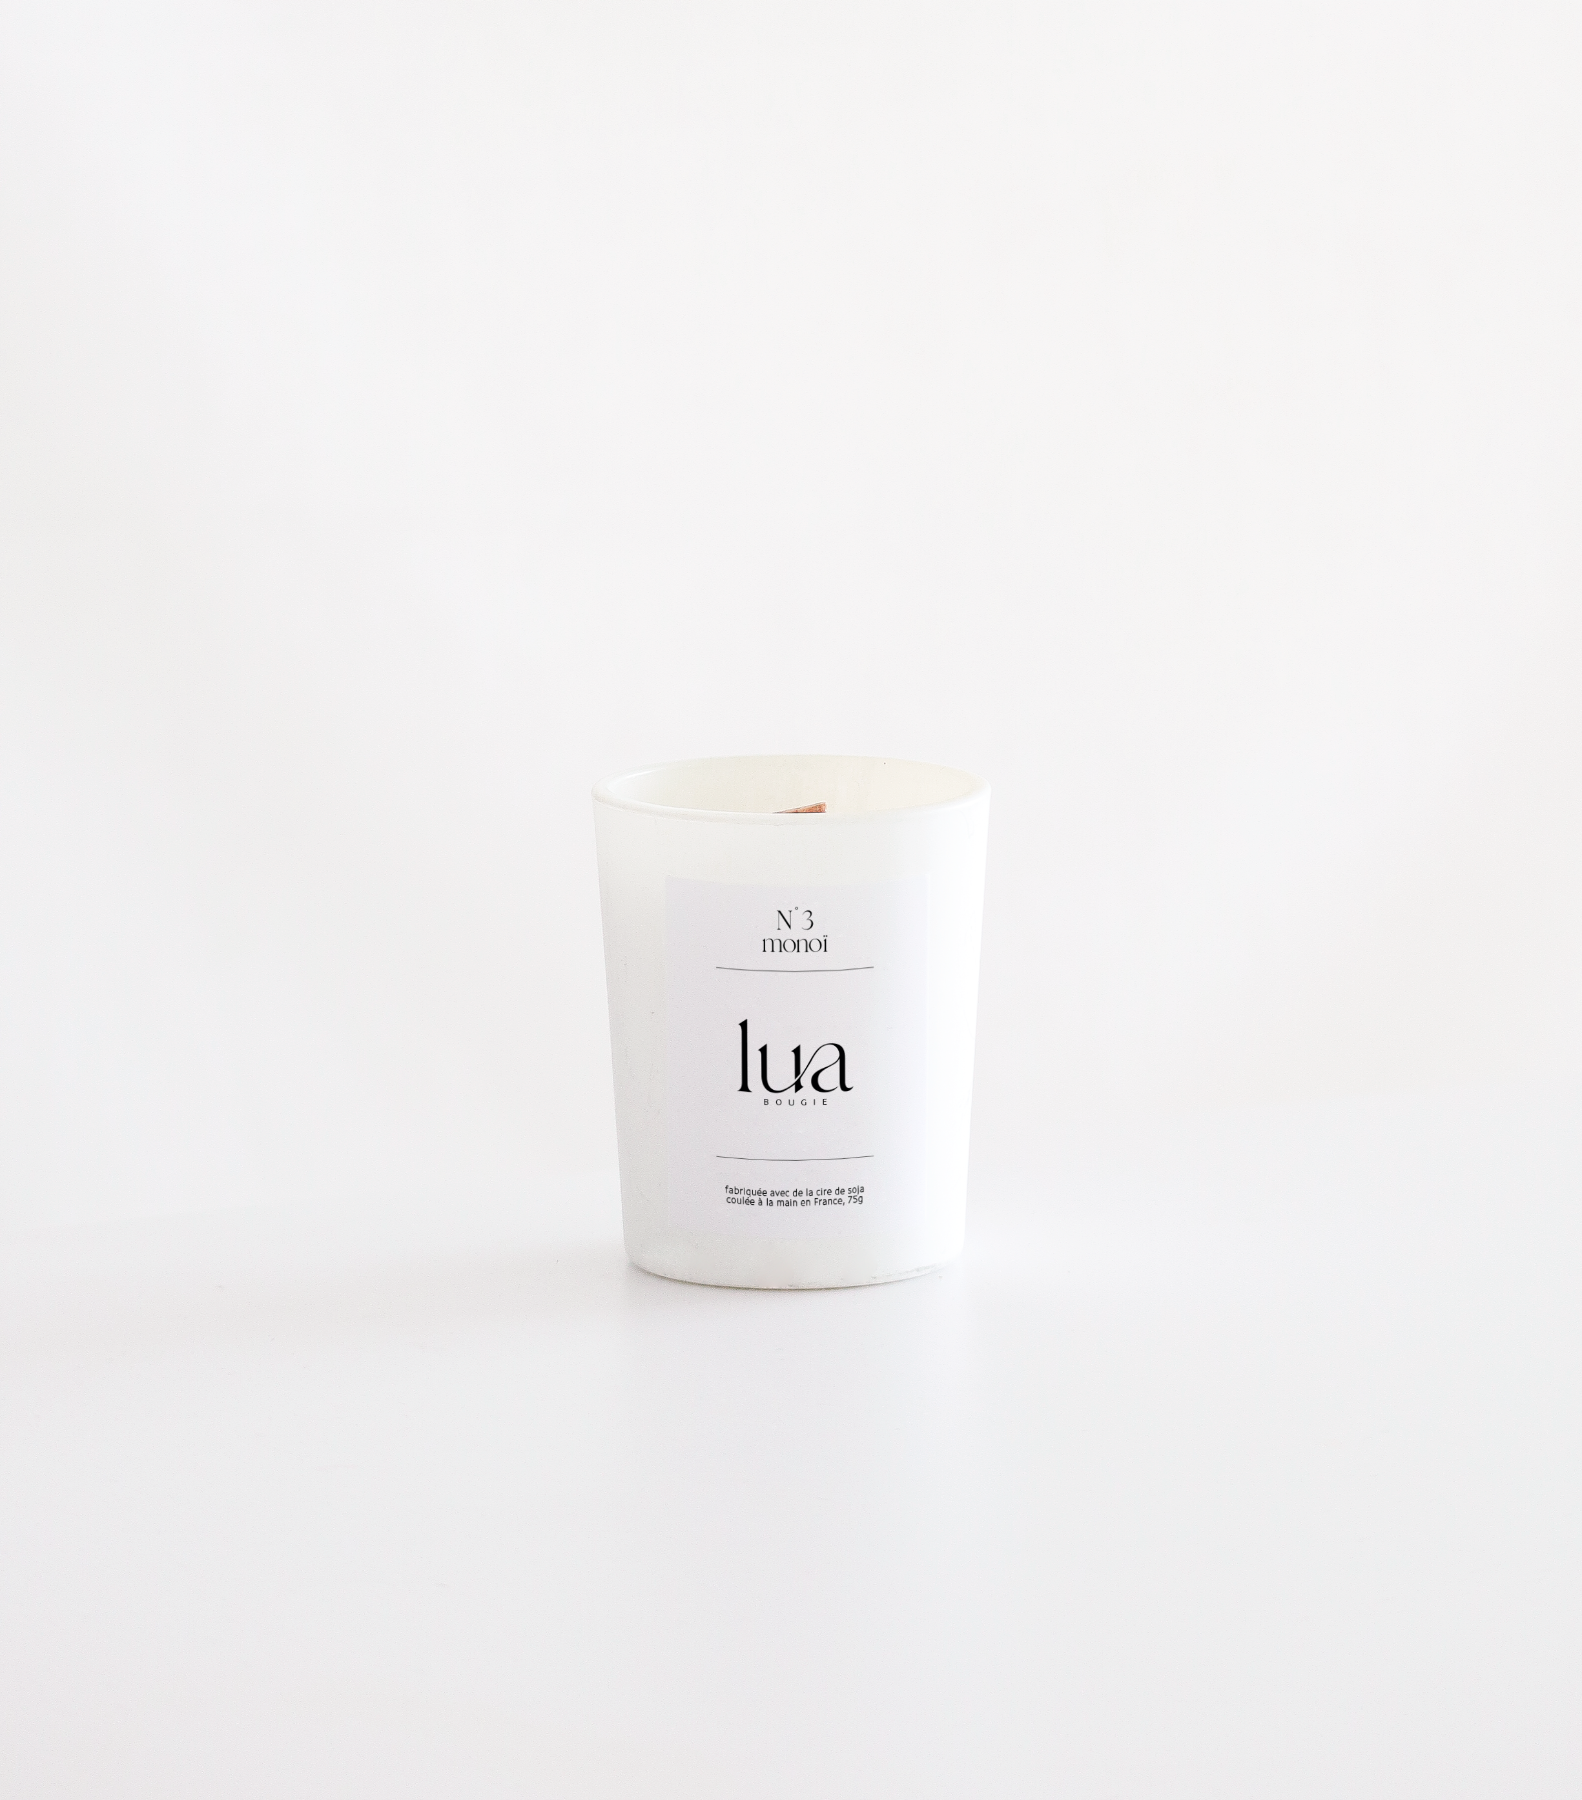 Bougie Lua personnalisables et rechargeables, parfums monoï, contenant blanc 75g. 